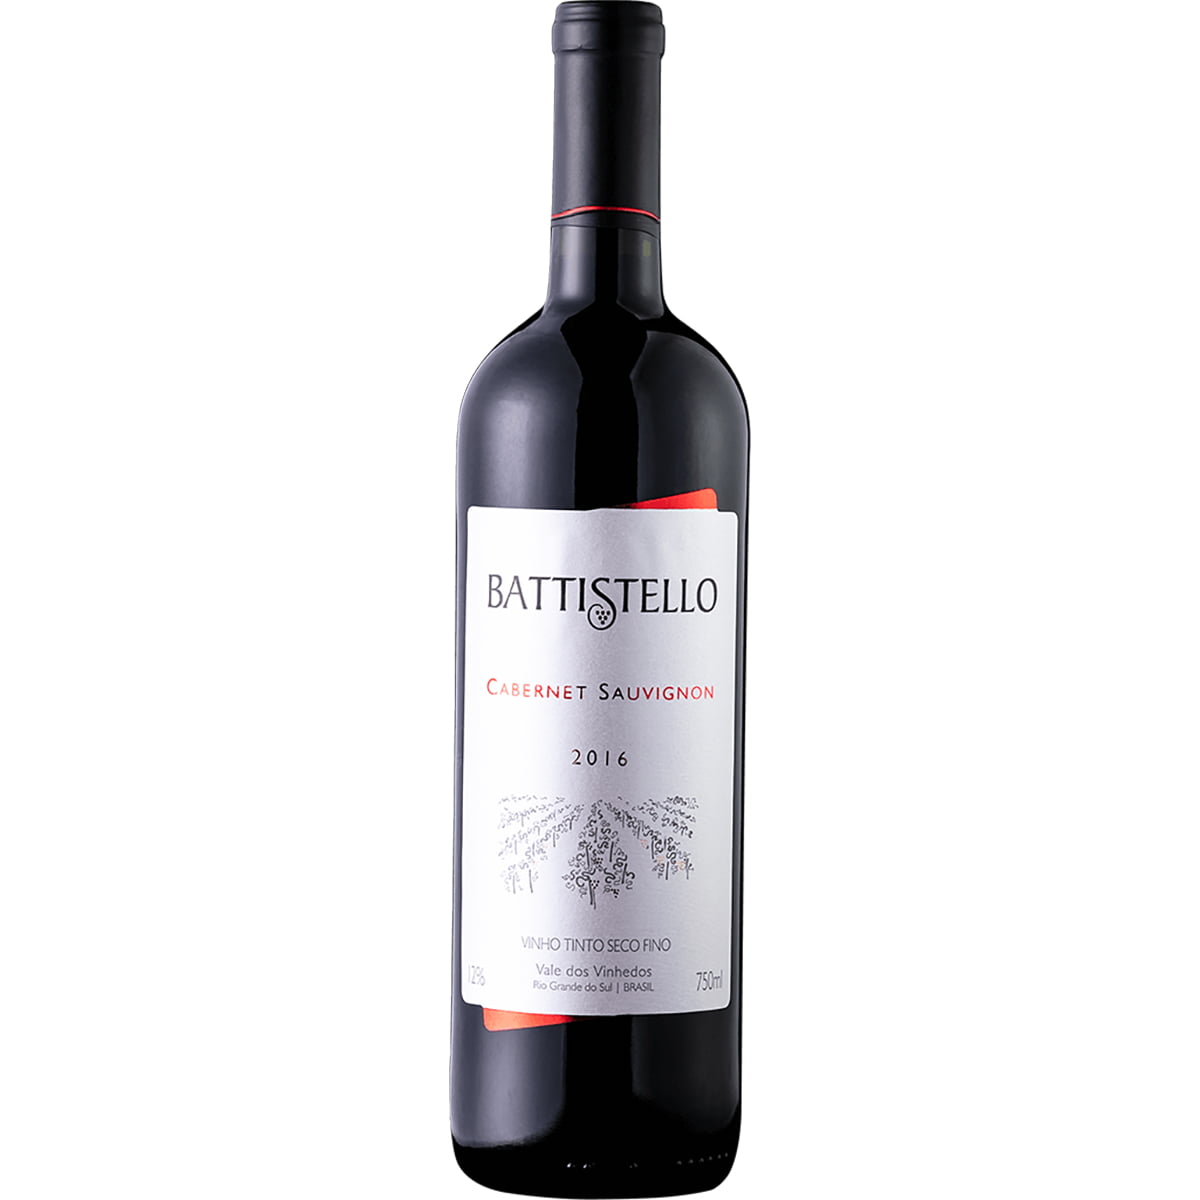 Battistello Cabernet Sauvignon Vinho Tinto Seco 750ml